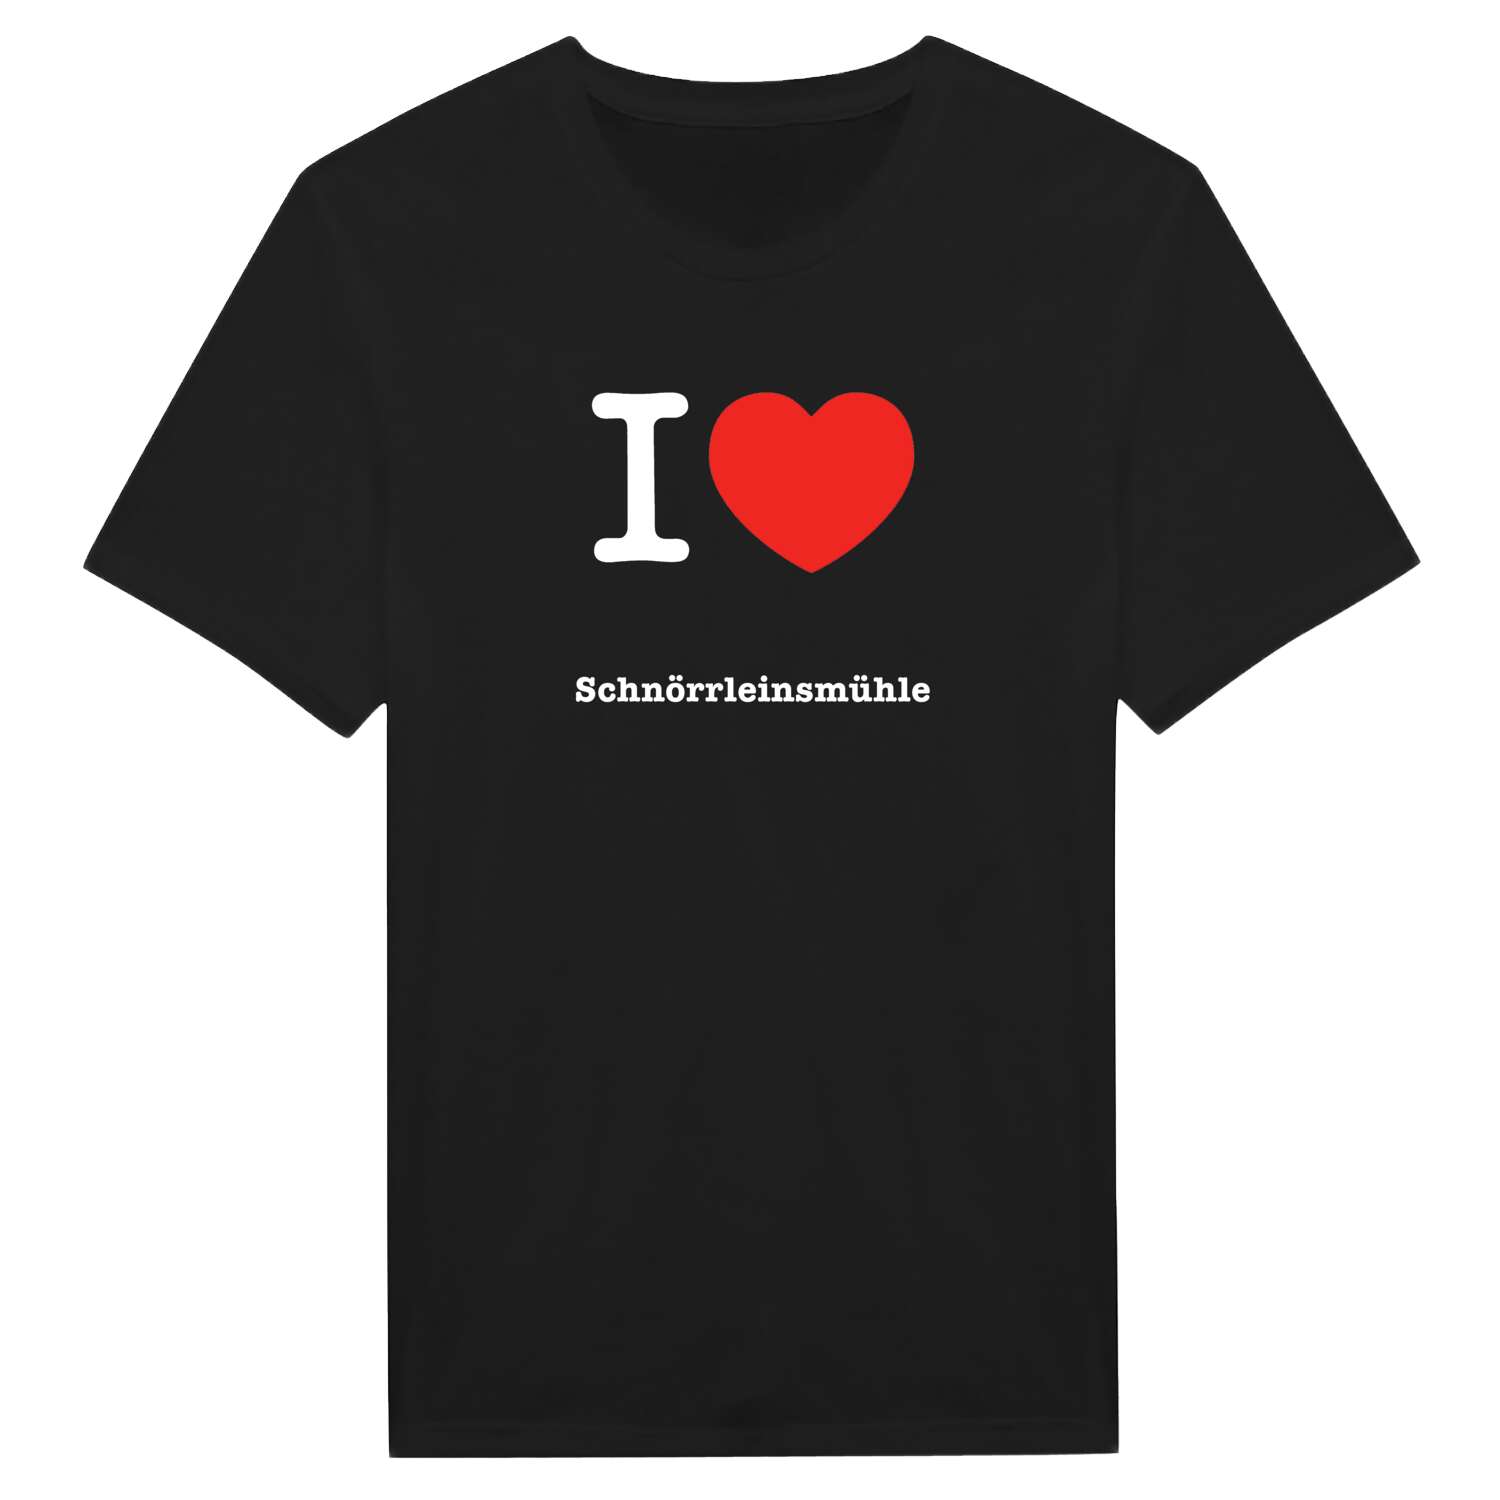 Schnörrleinsmühle T-Shirt »I love«